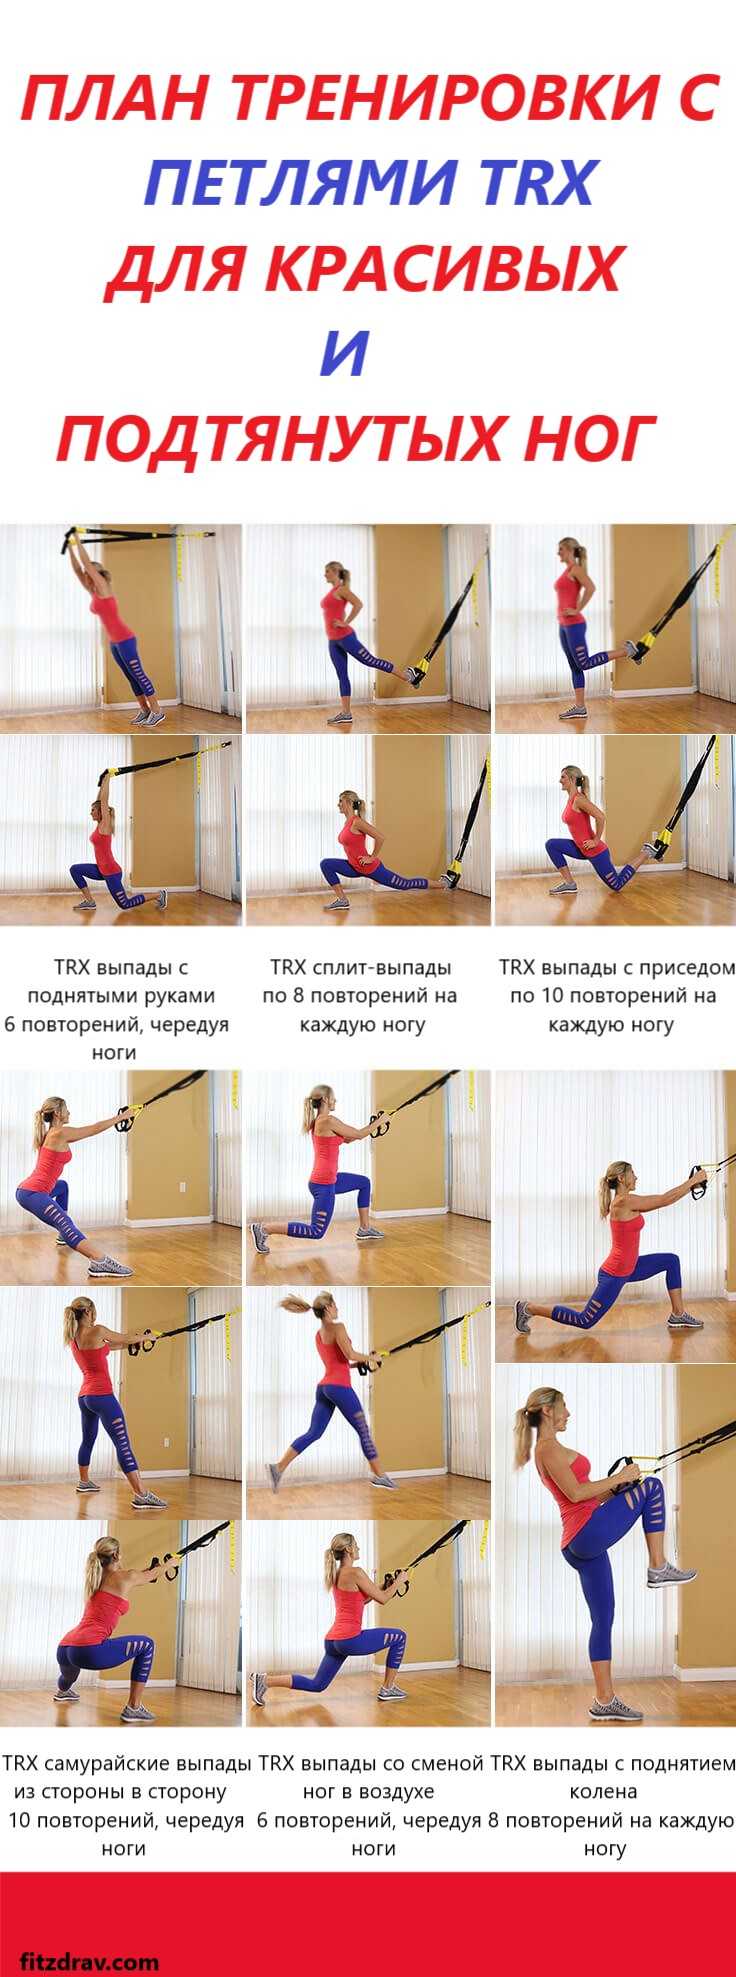 TRX-тренировка - это эффективный способ проработать мышцы всего тела при этом имея всего один спортивный инвентарь Мария Симак рассказывает о личном опыте тренировок с петлями, и как изменилось ее тело за это время